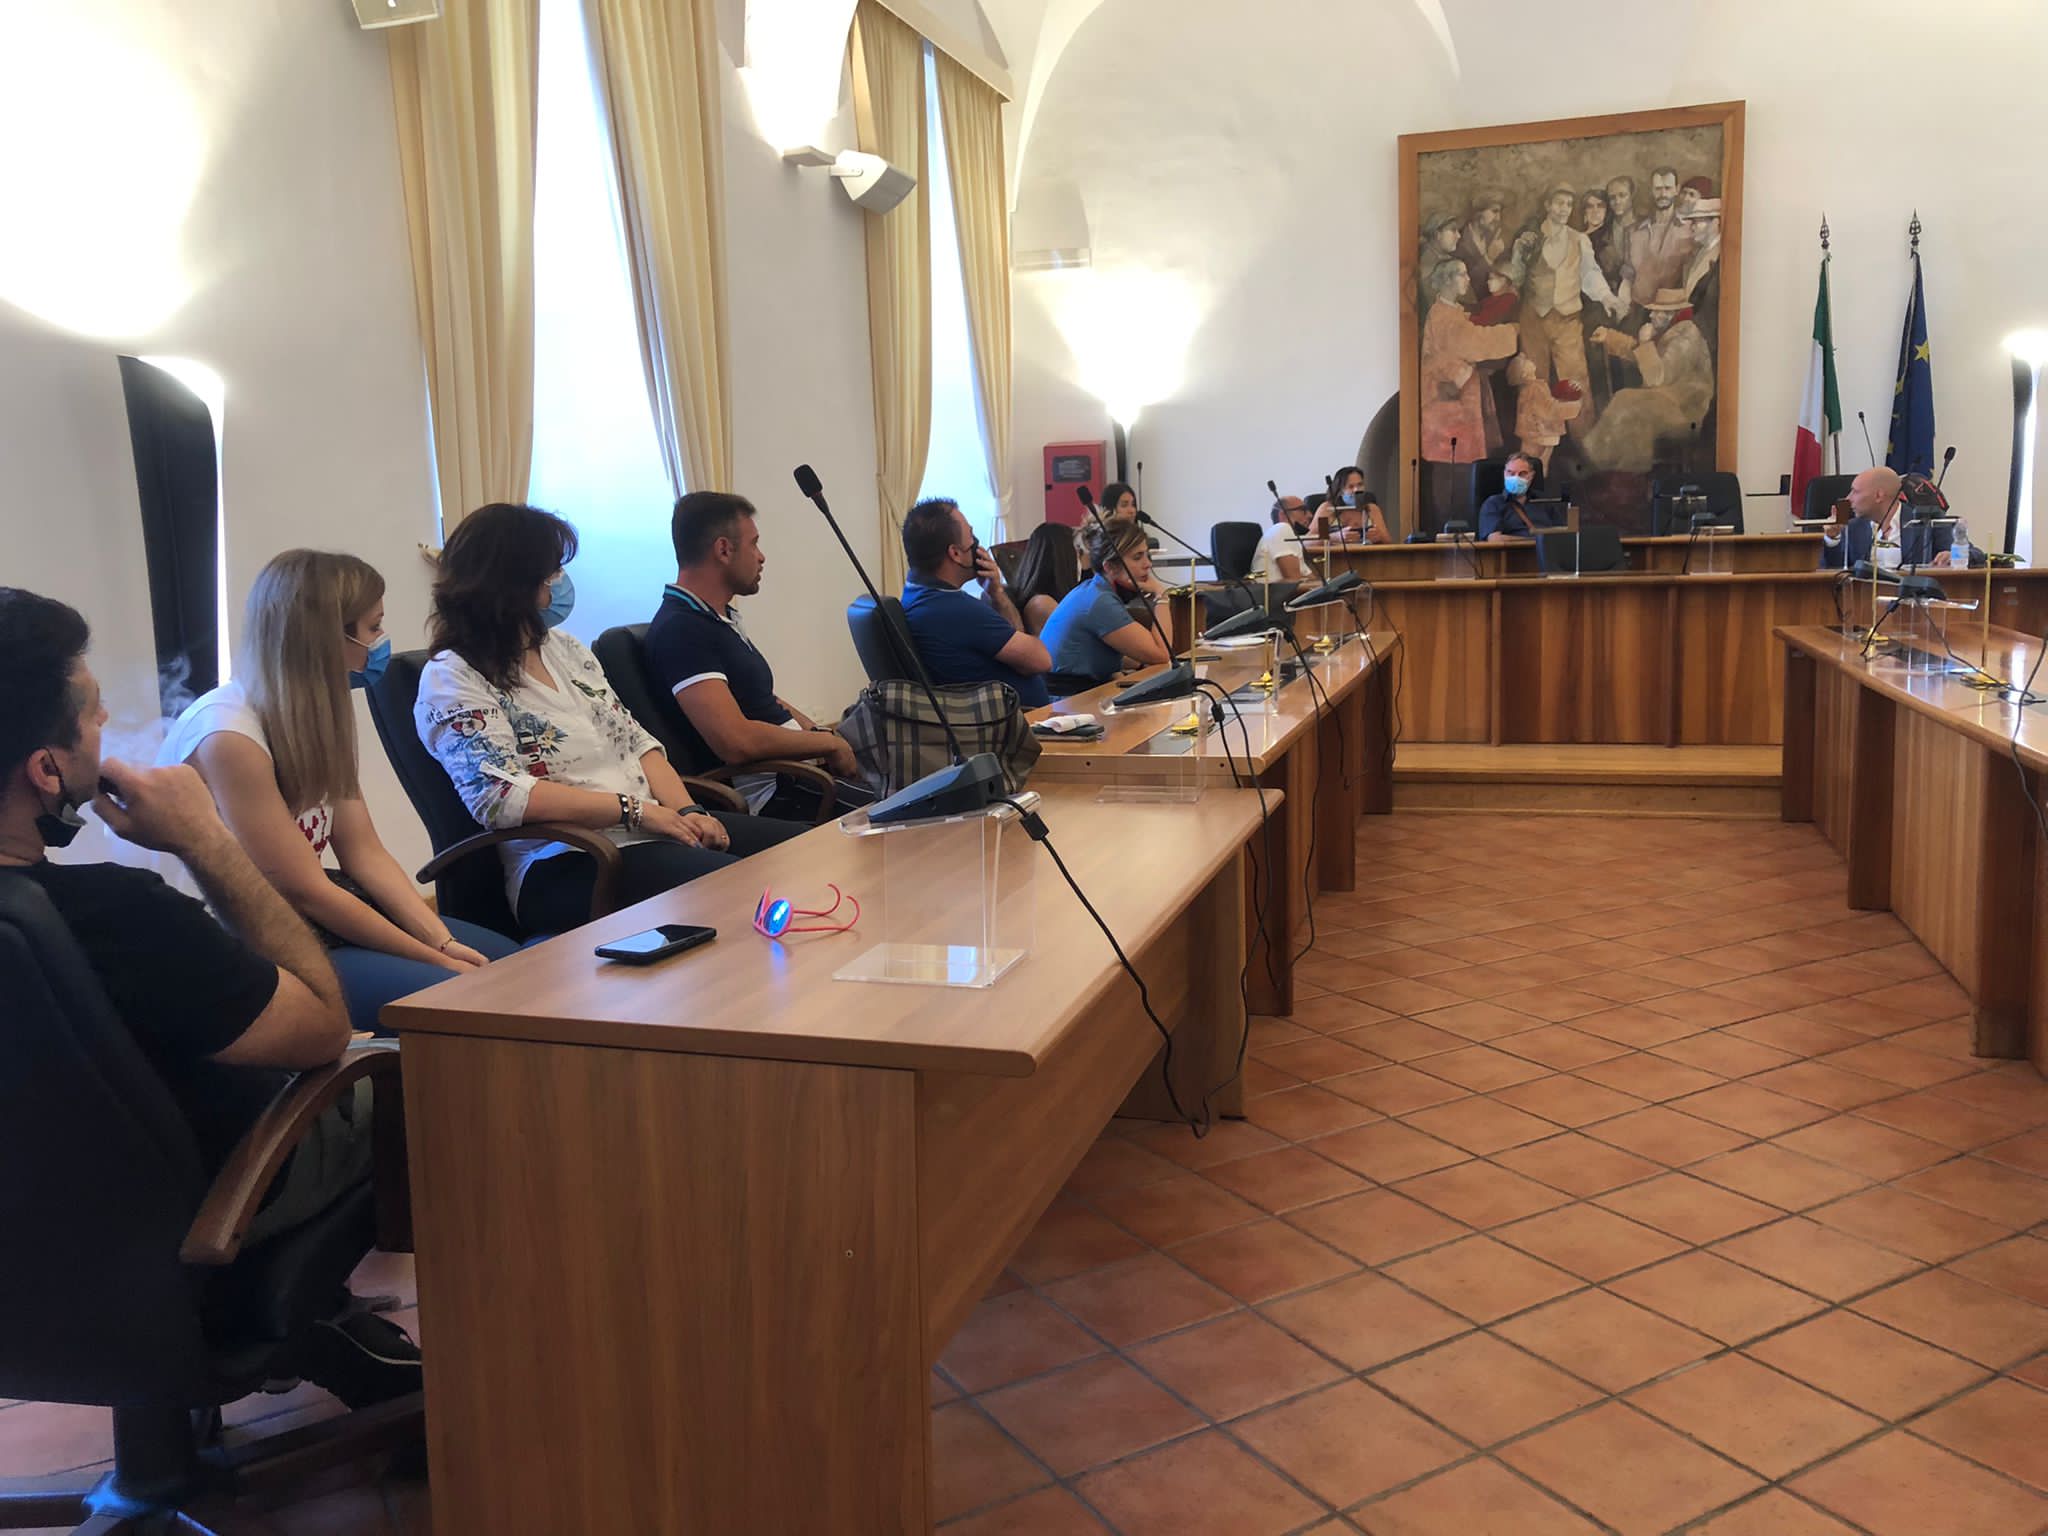 Post precedente: Presentazione dei nuovi corsi formativi di Disco Lazio con Rete imprese città di Valmontone